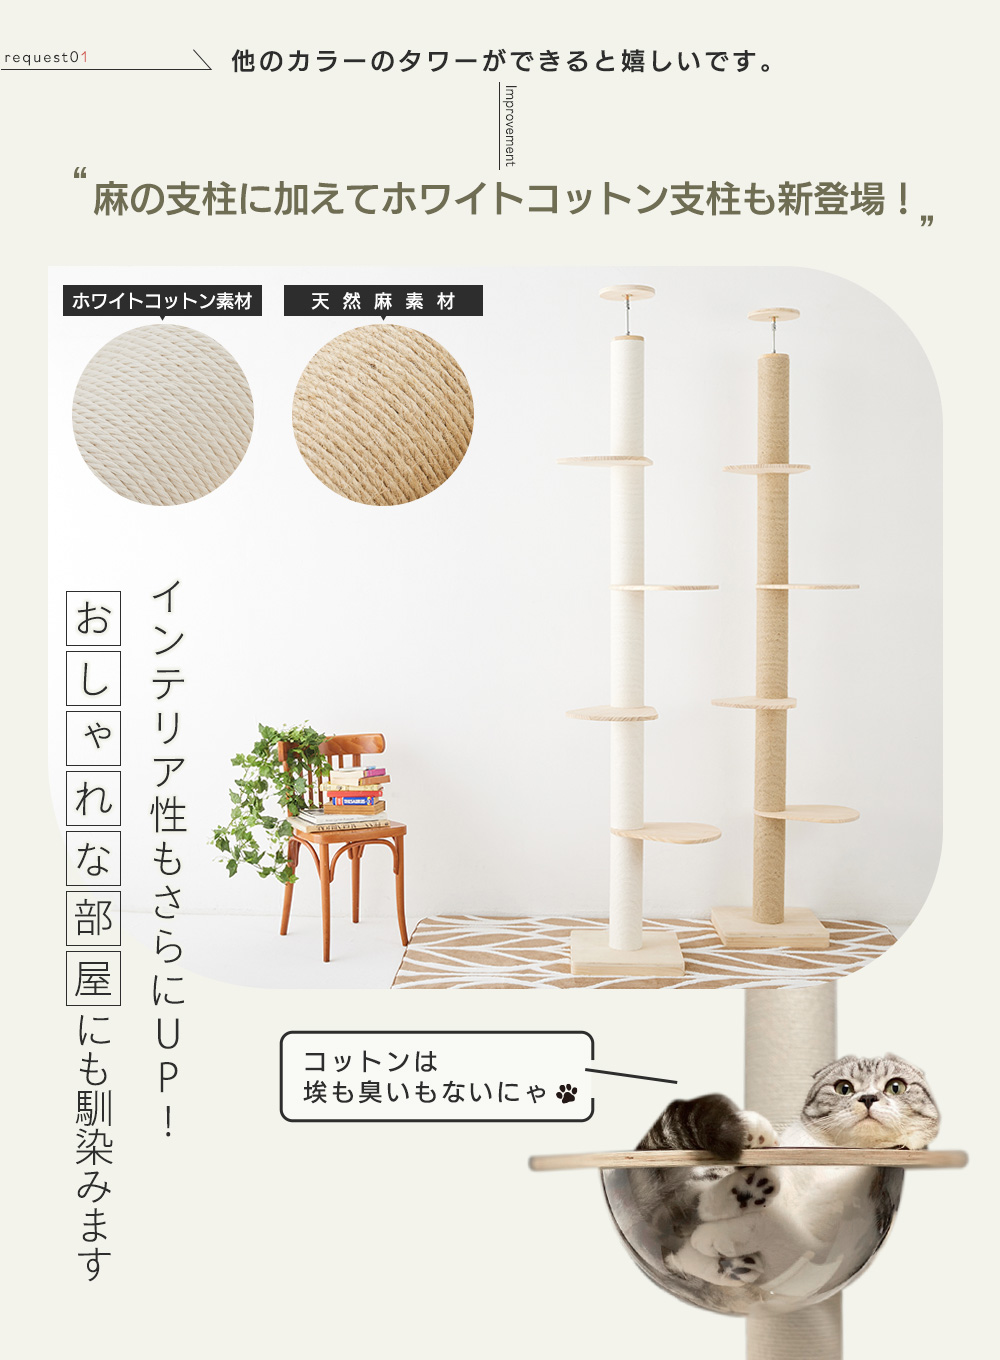 SUMIKA 福袋 猫 木製突っ張り型タワー